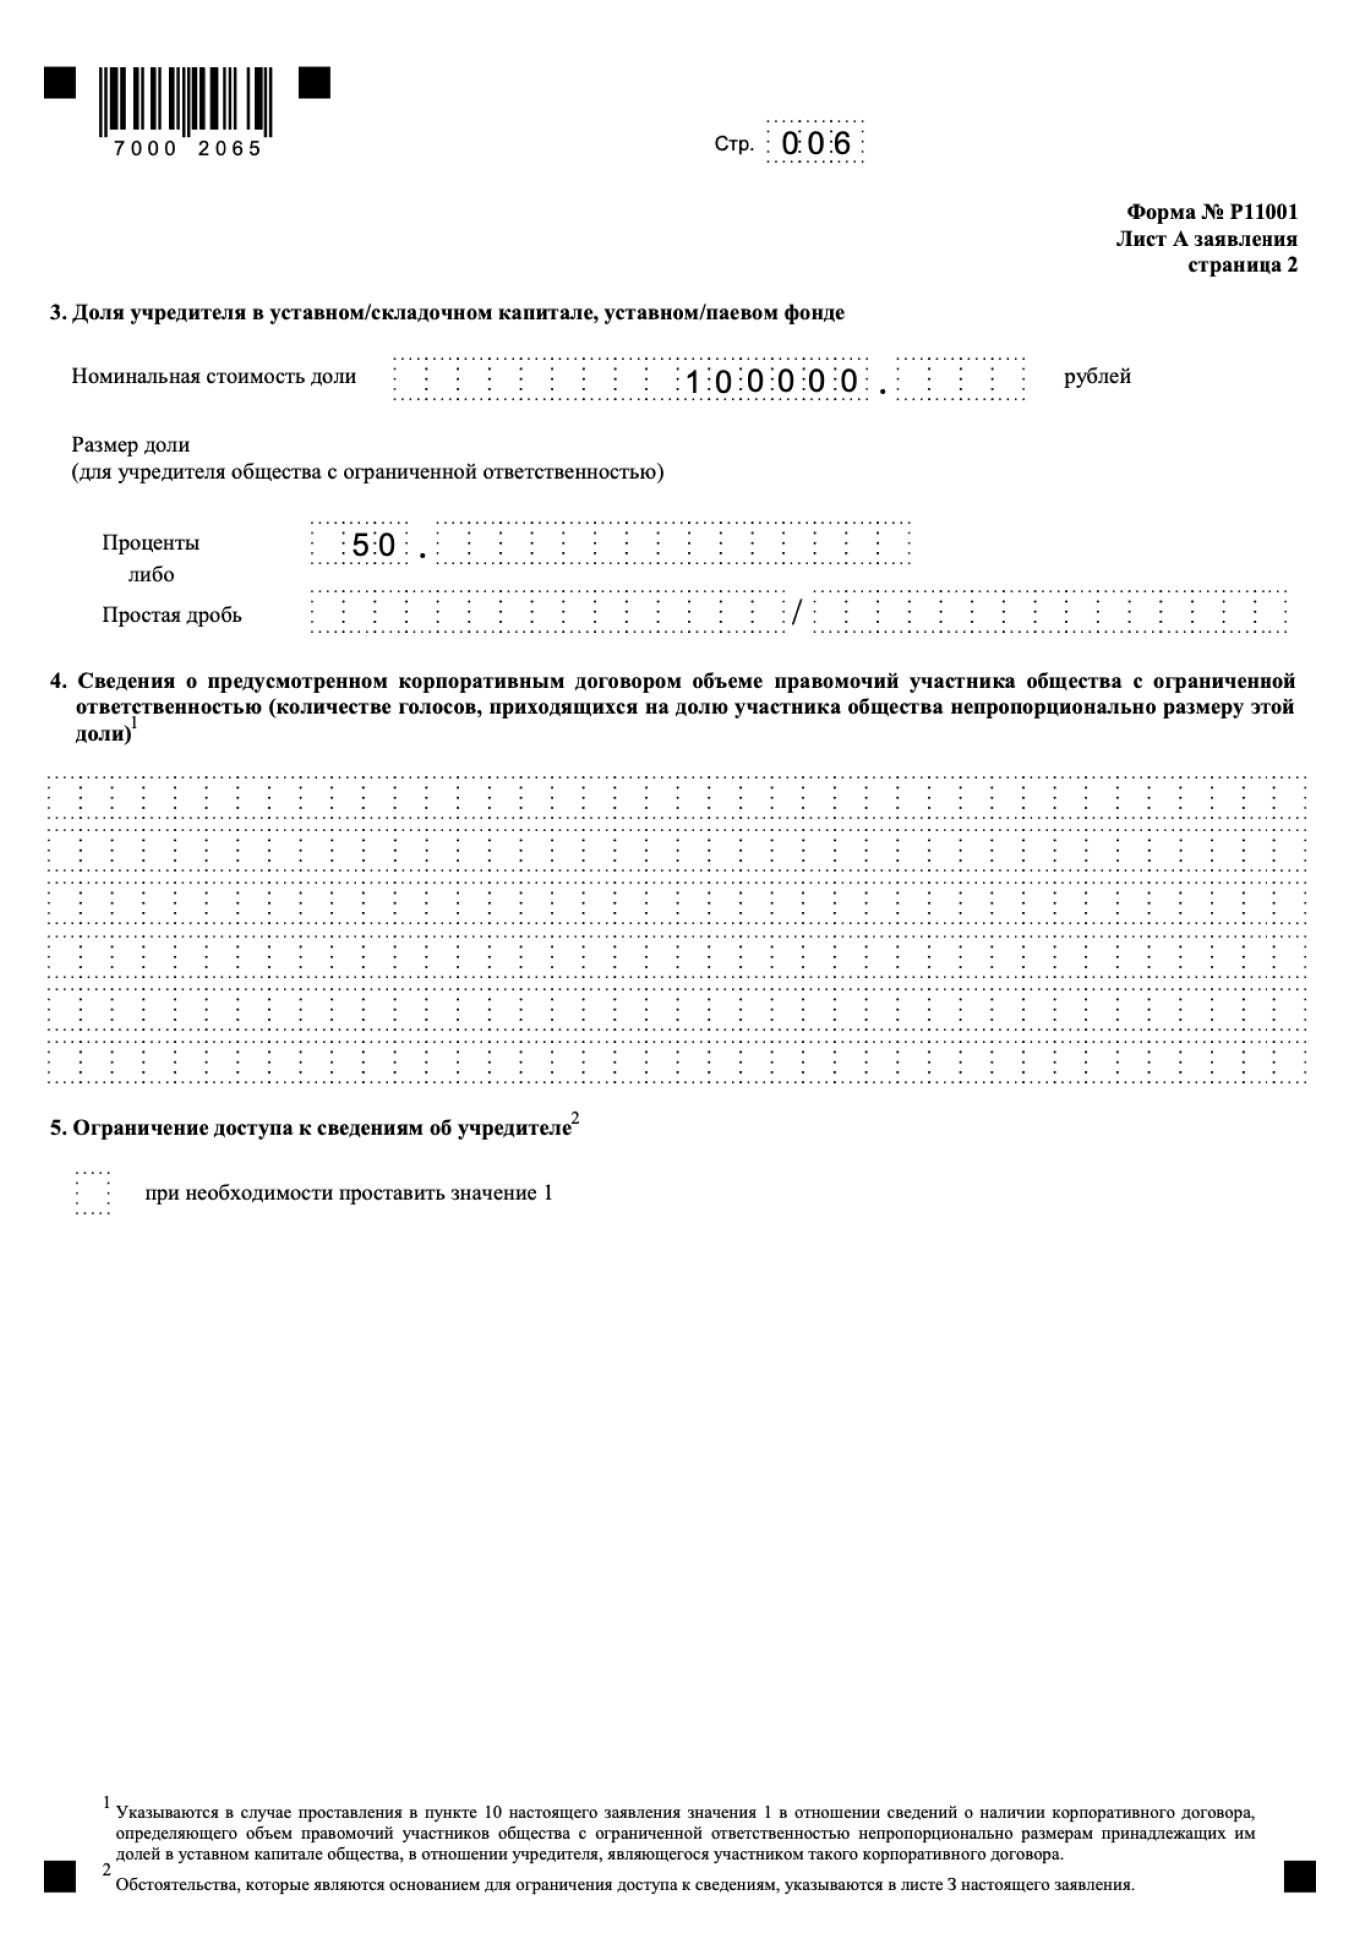 Заполнение листа Б в заявлении по форме P11001 для учредителей-физлиц